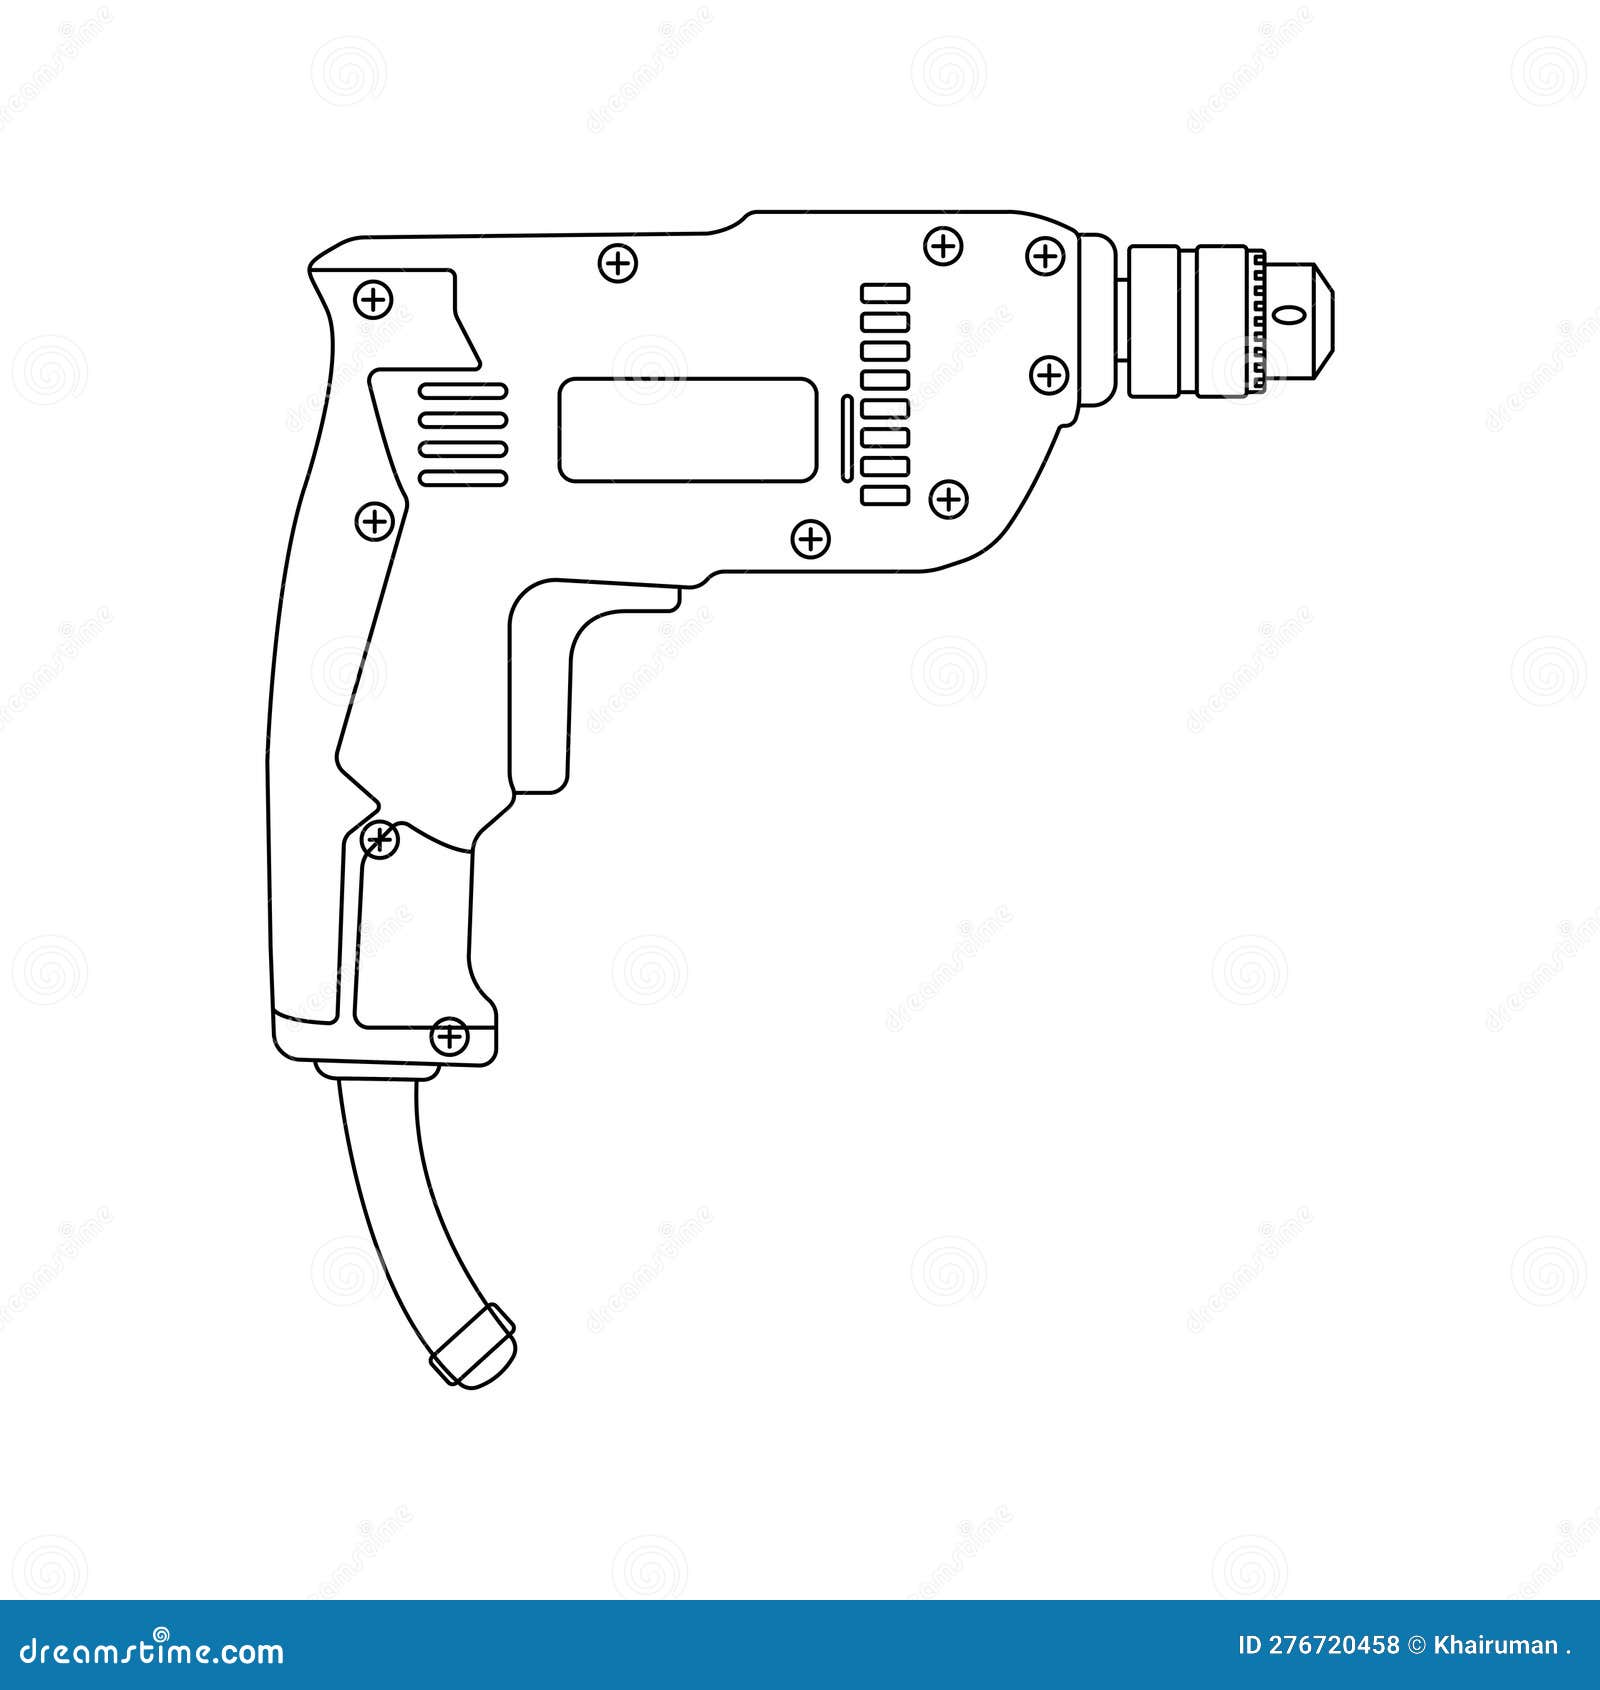 Update 110+ hand drill machine drawing